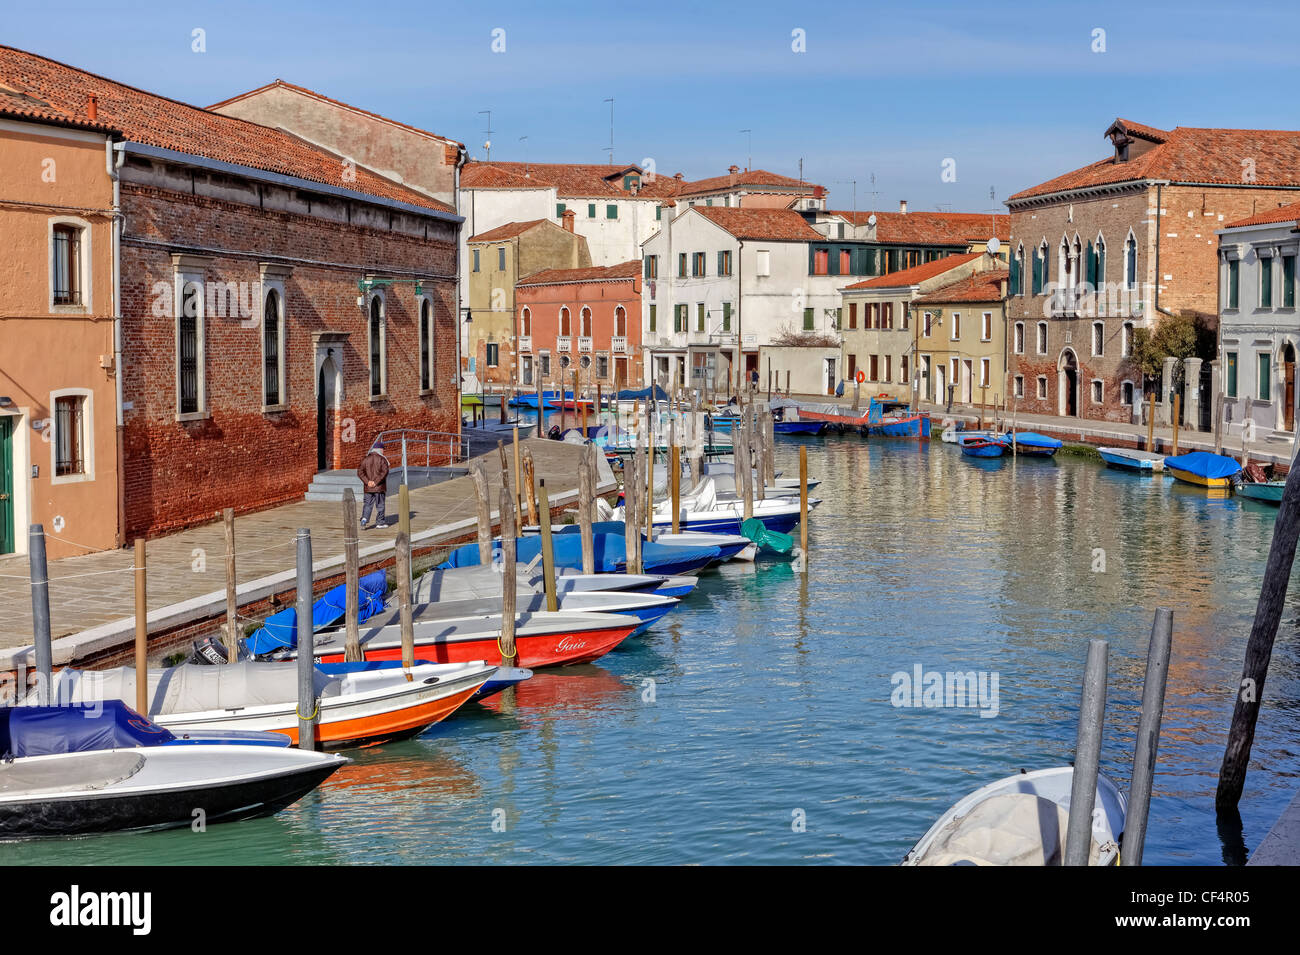 Canale di San Donato, Murano, Veneto, Italien Stockfoto